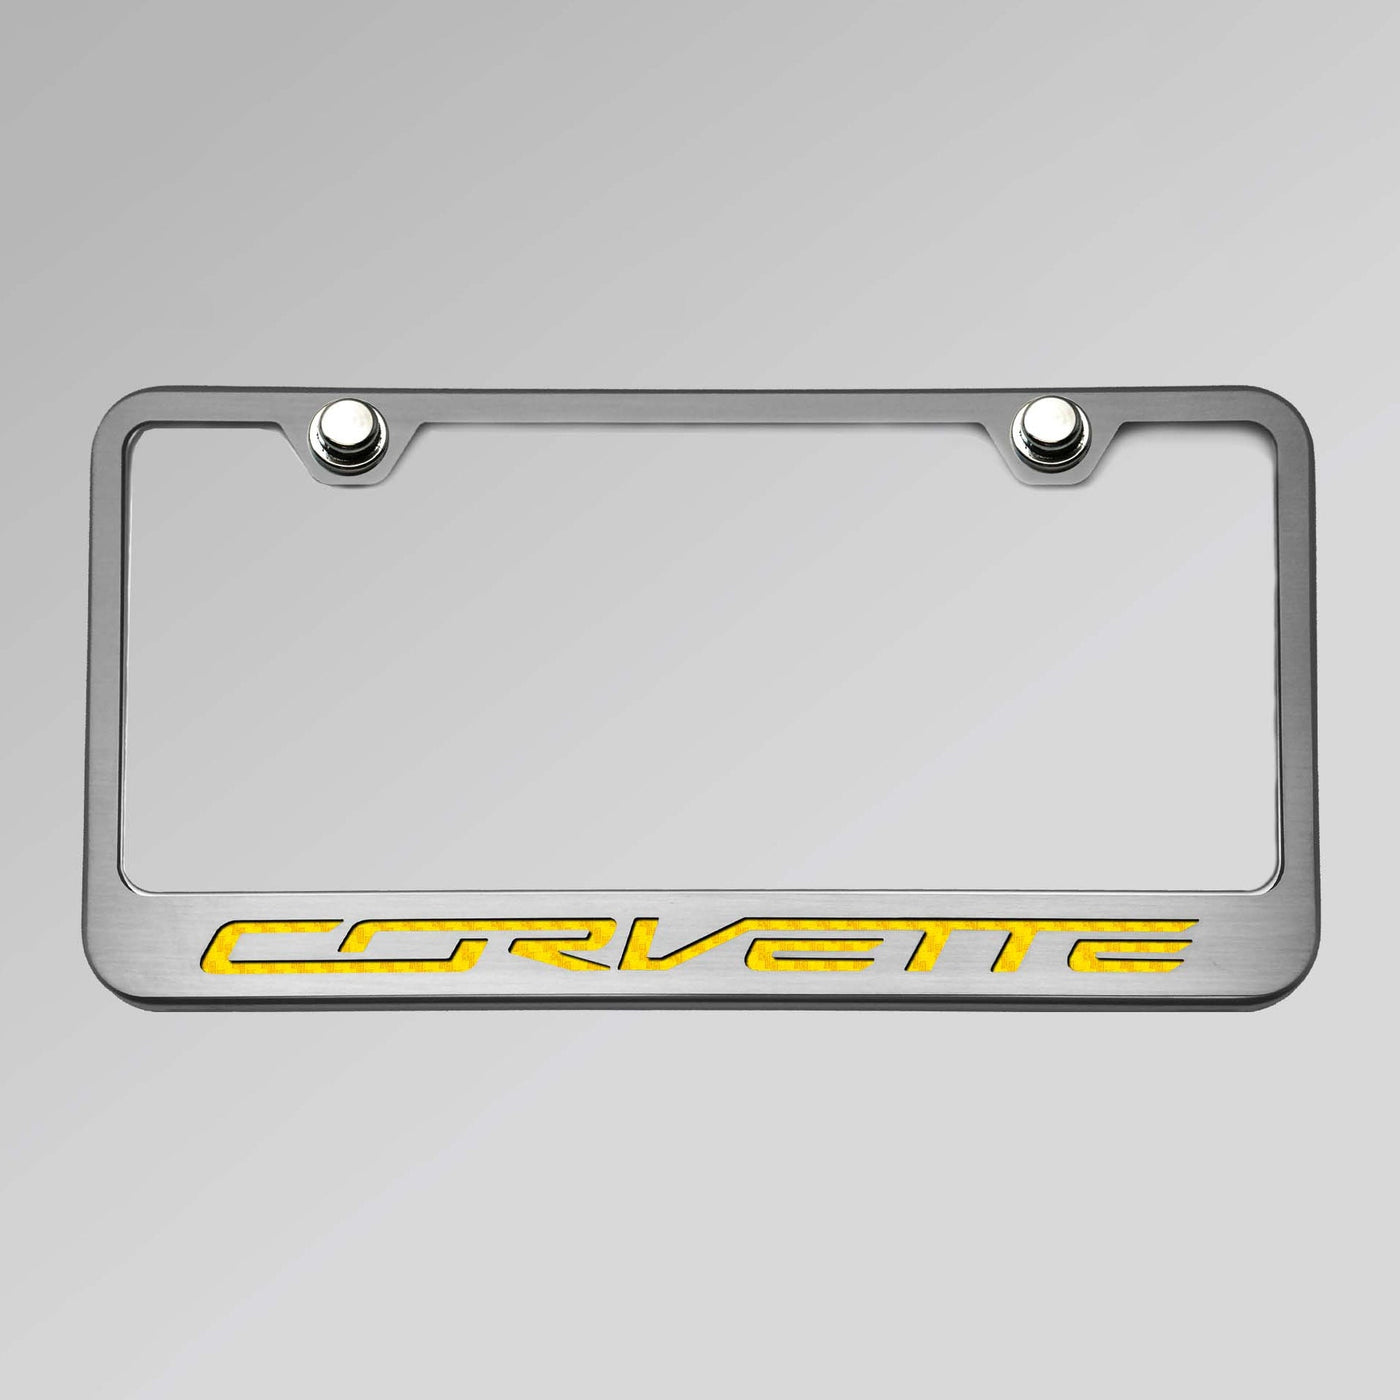 2014-2019 C7 Corvette - License Plate Frame CORVETTE Lettering - Stainless Steel